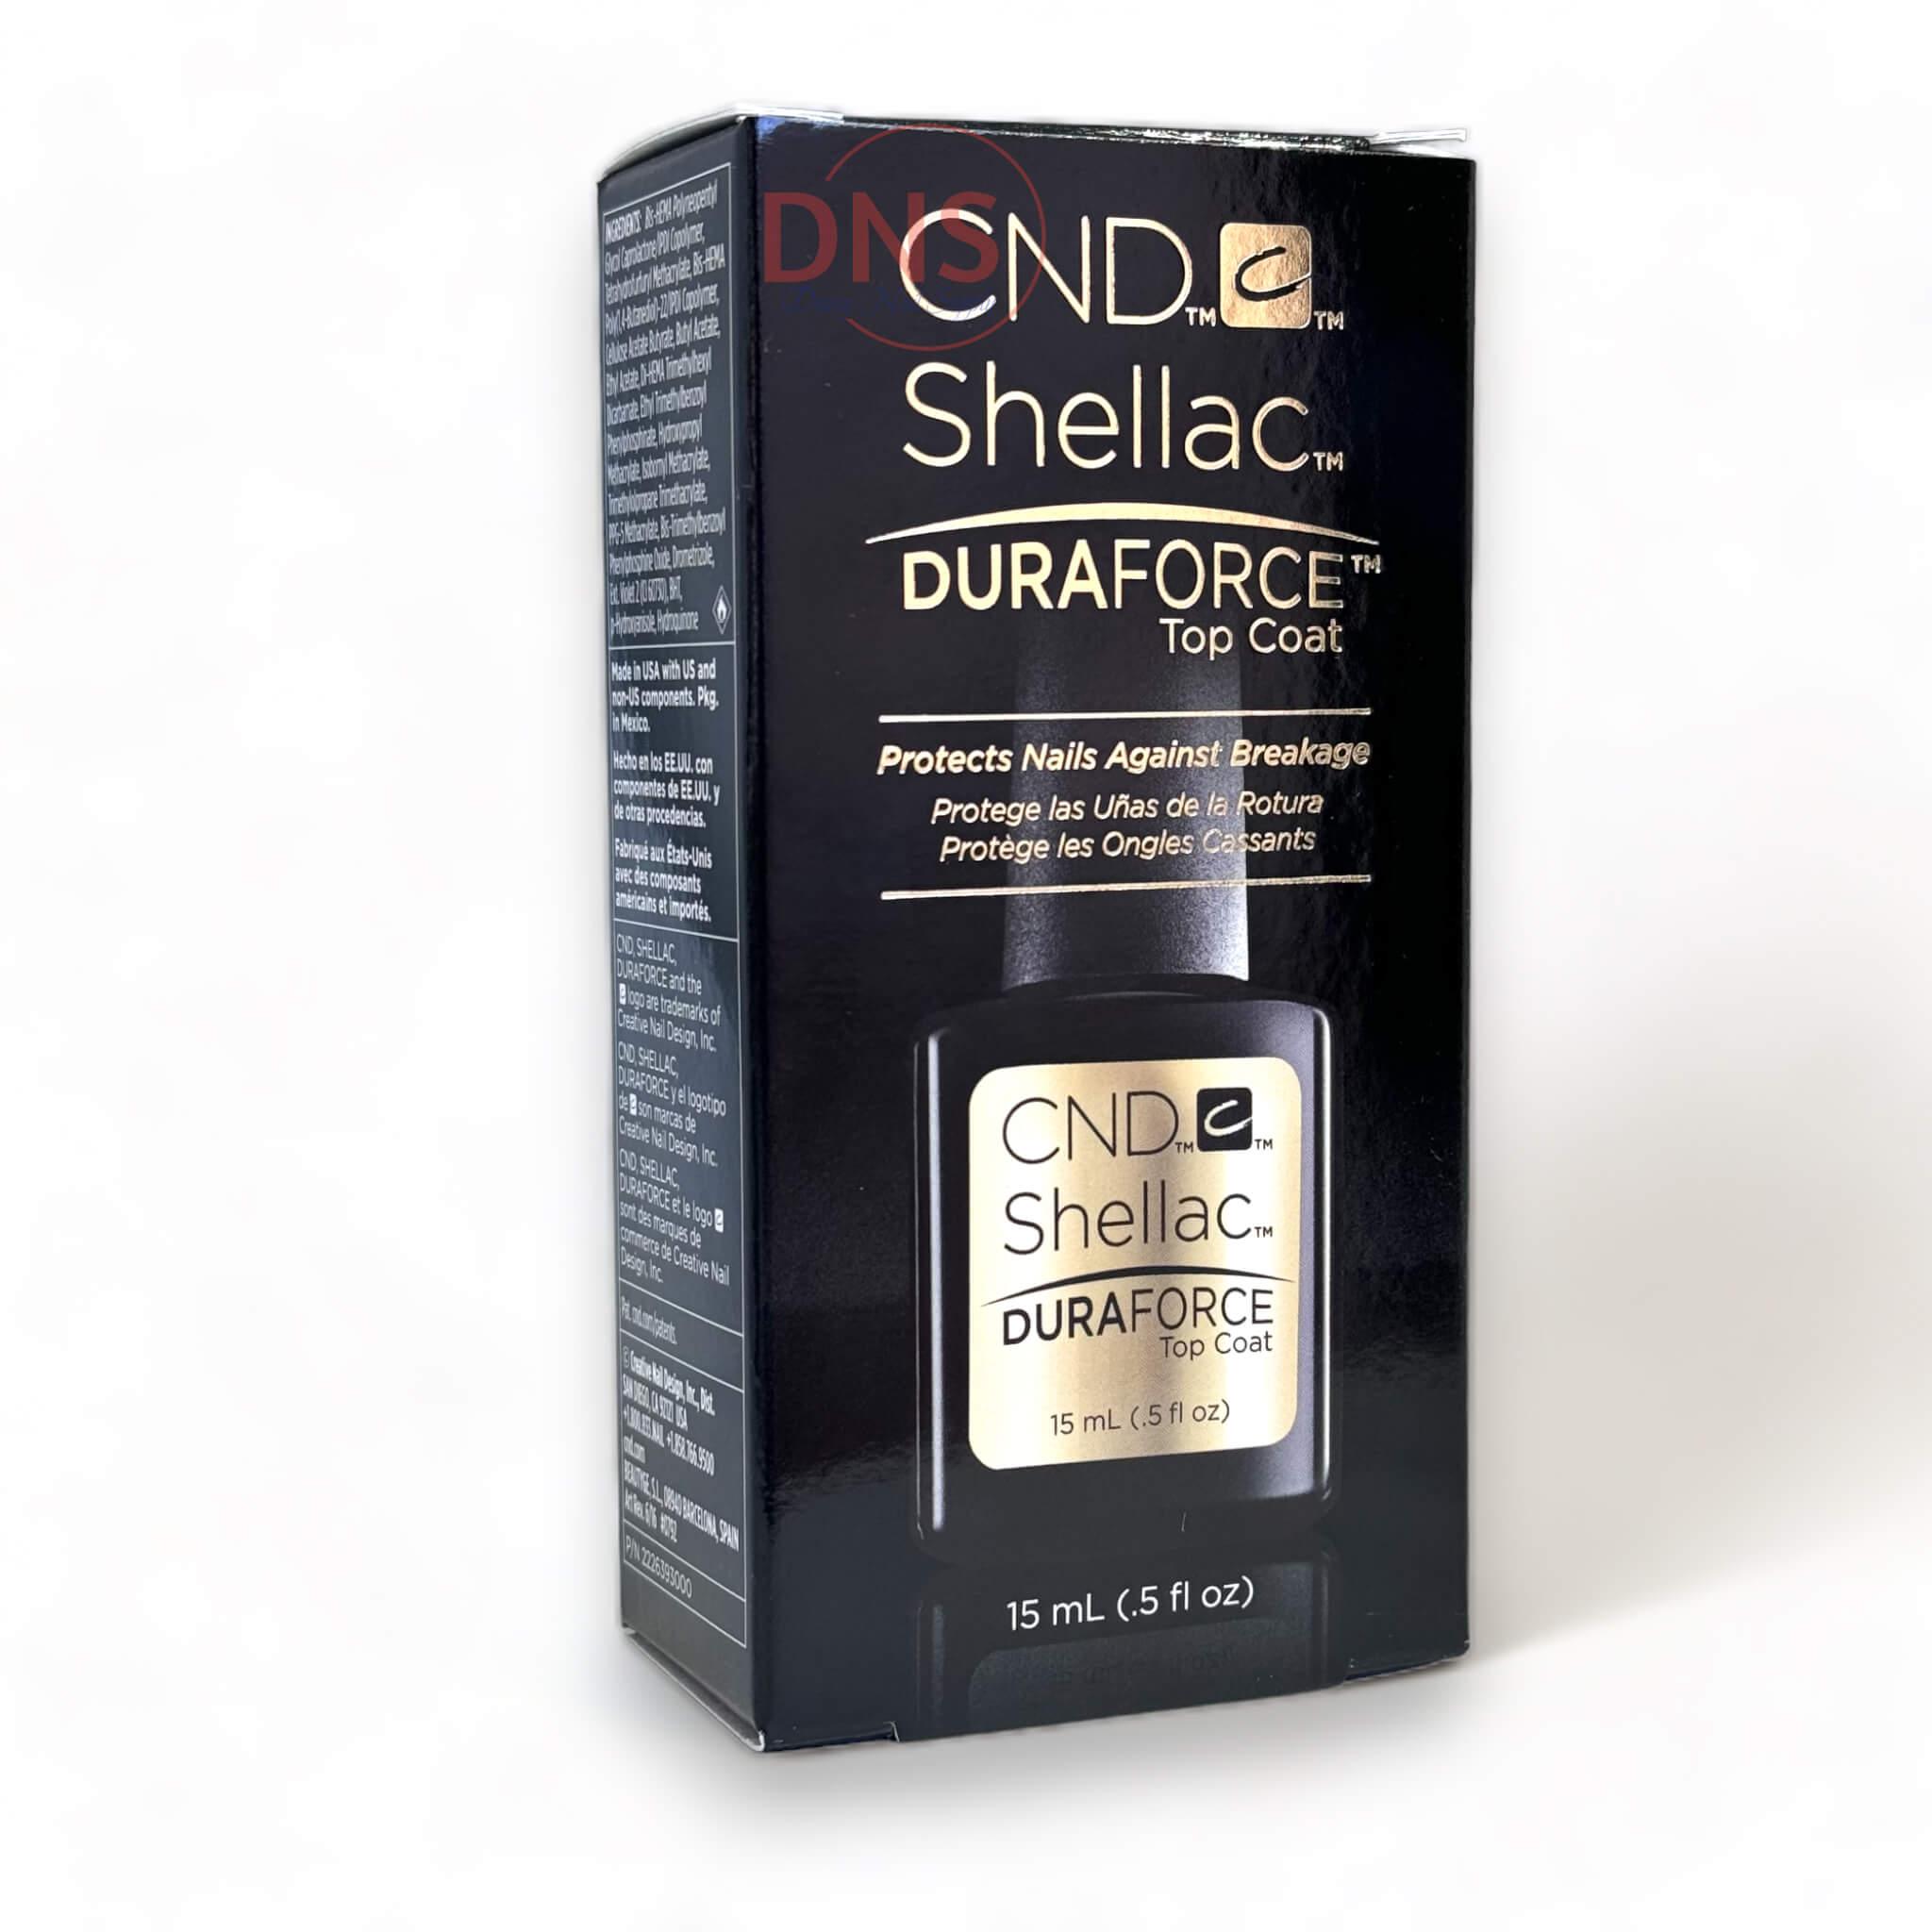 CND SHELLAC No Duraforce Top Coat 0.5 Fl oz